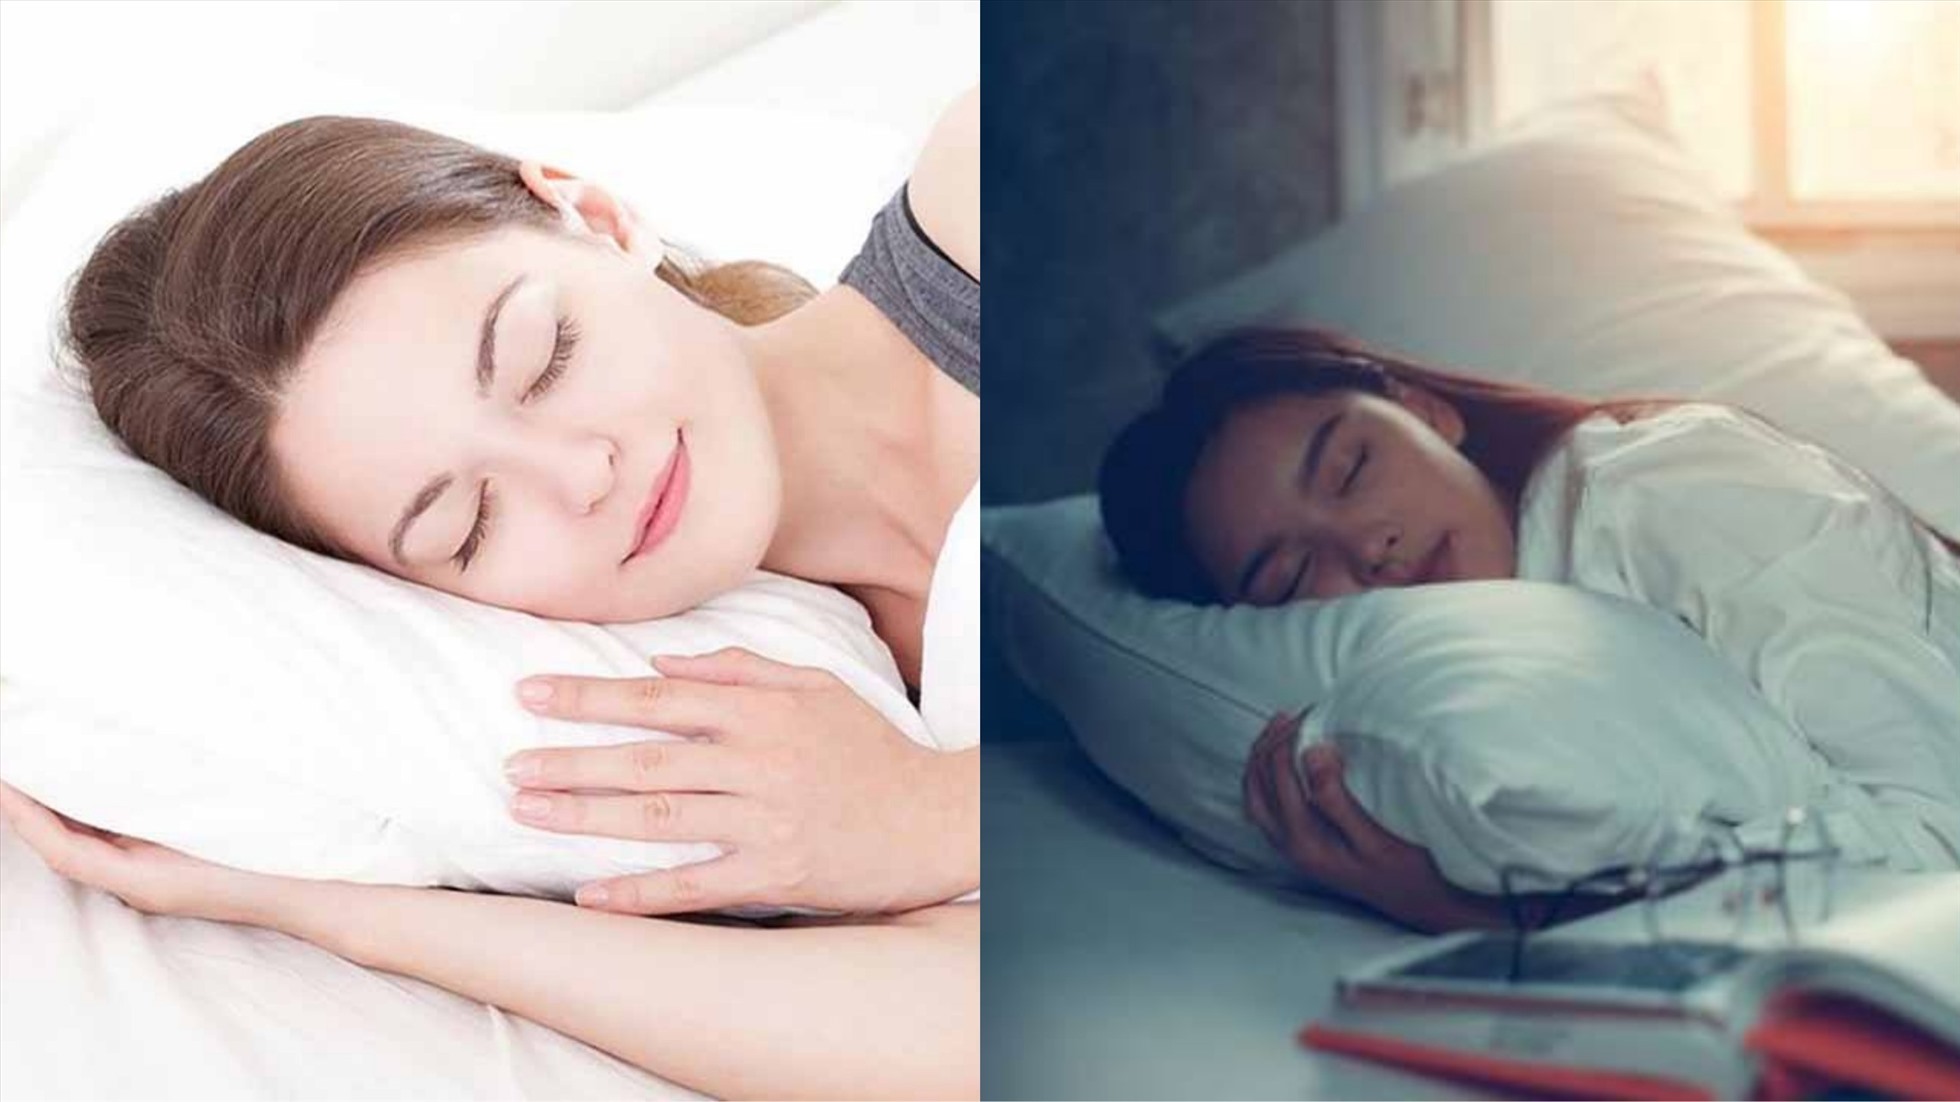 Nhiệt độ phòng không hợp lý có thể khiến hiệu quả giấc ngủ bị suy giảm (Ảnh đồ họa: Hàn Lâm)